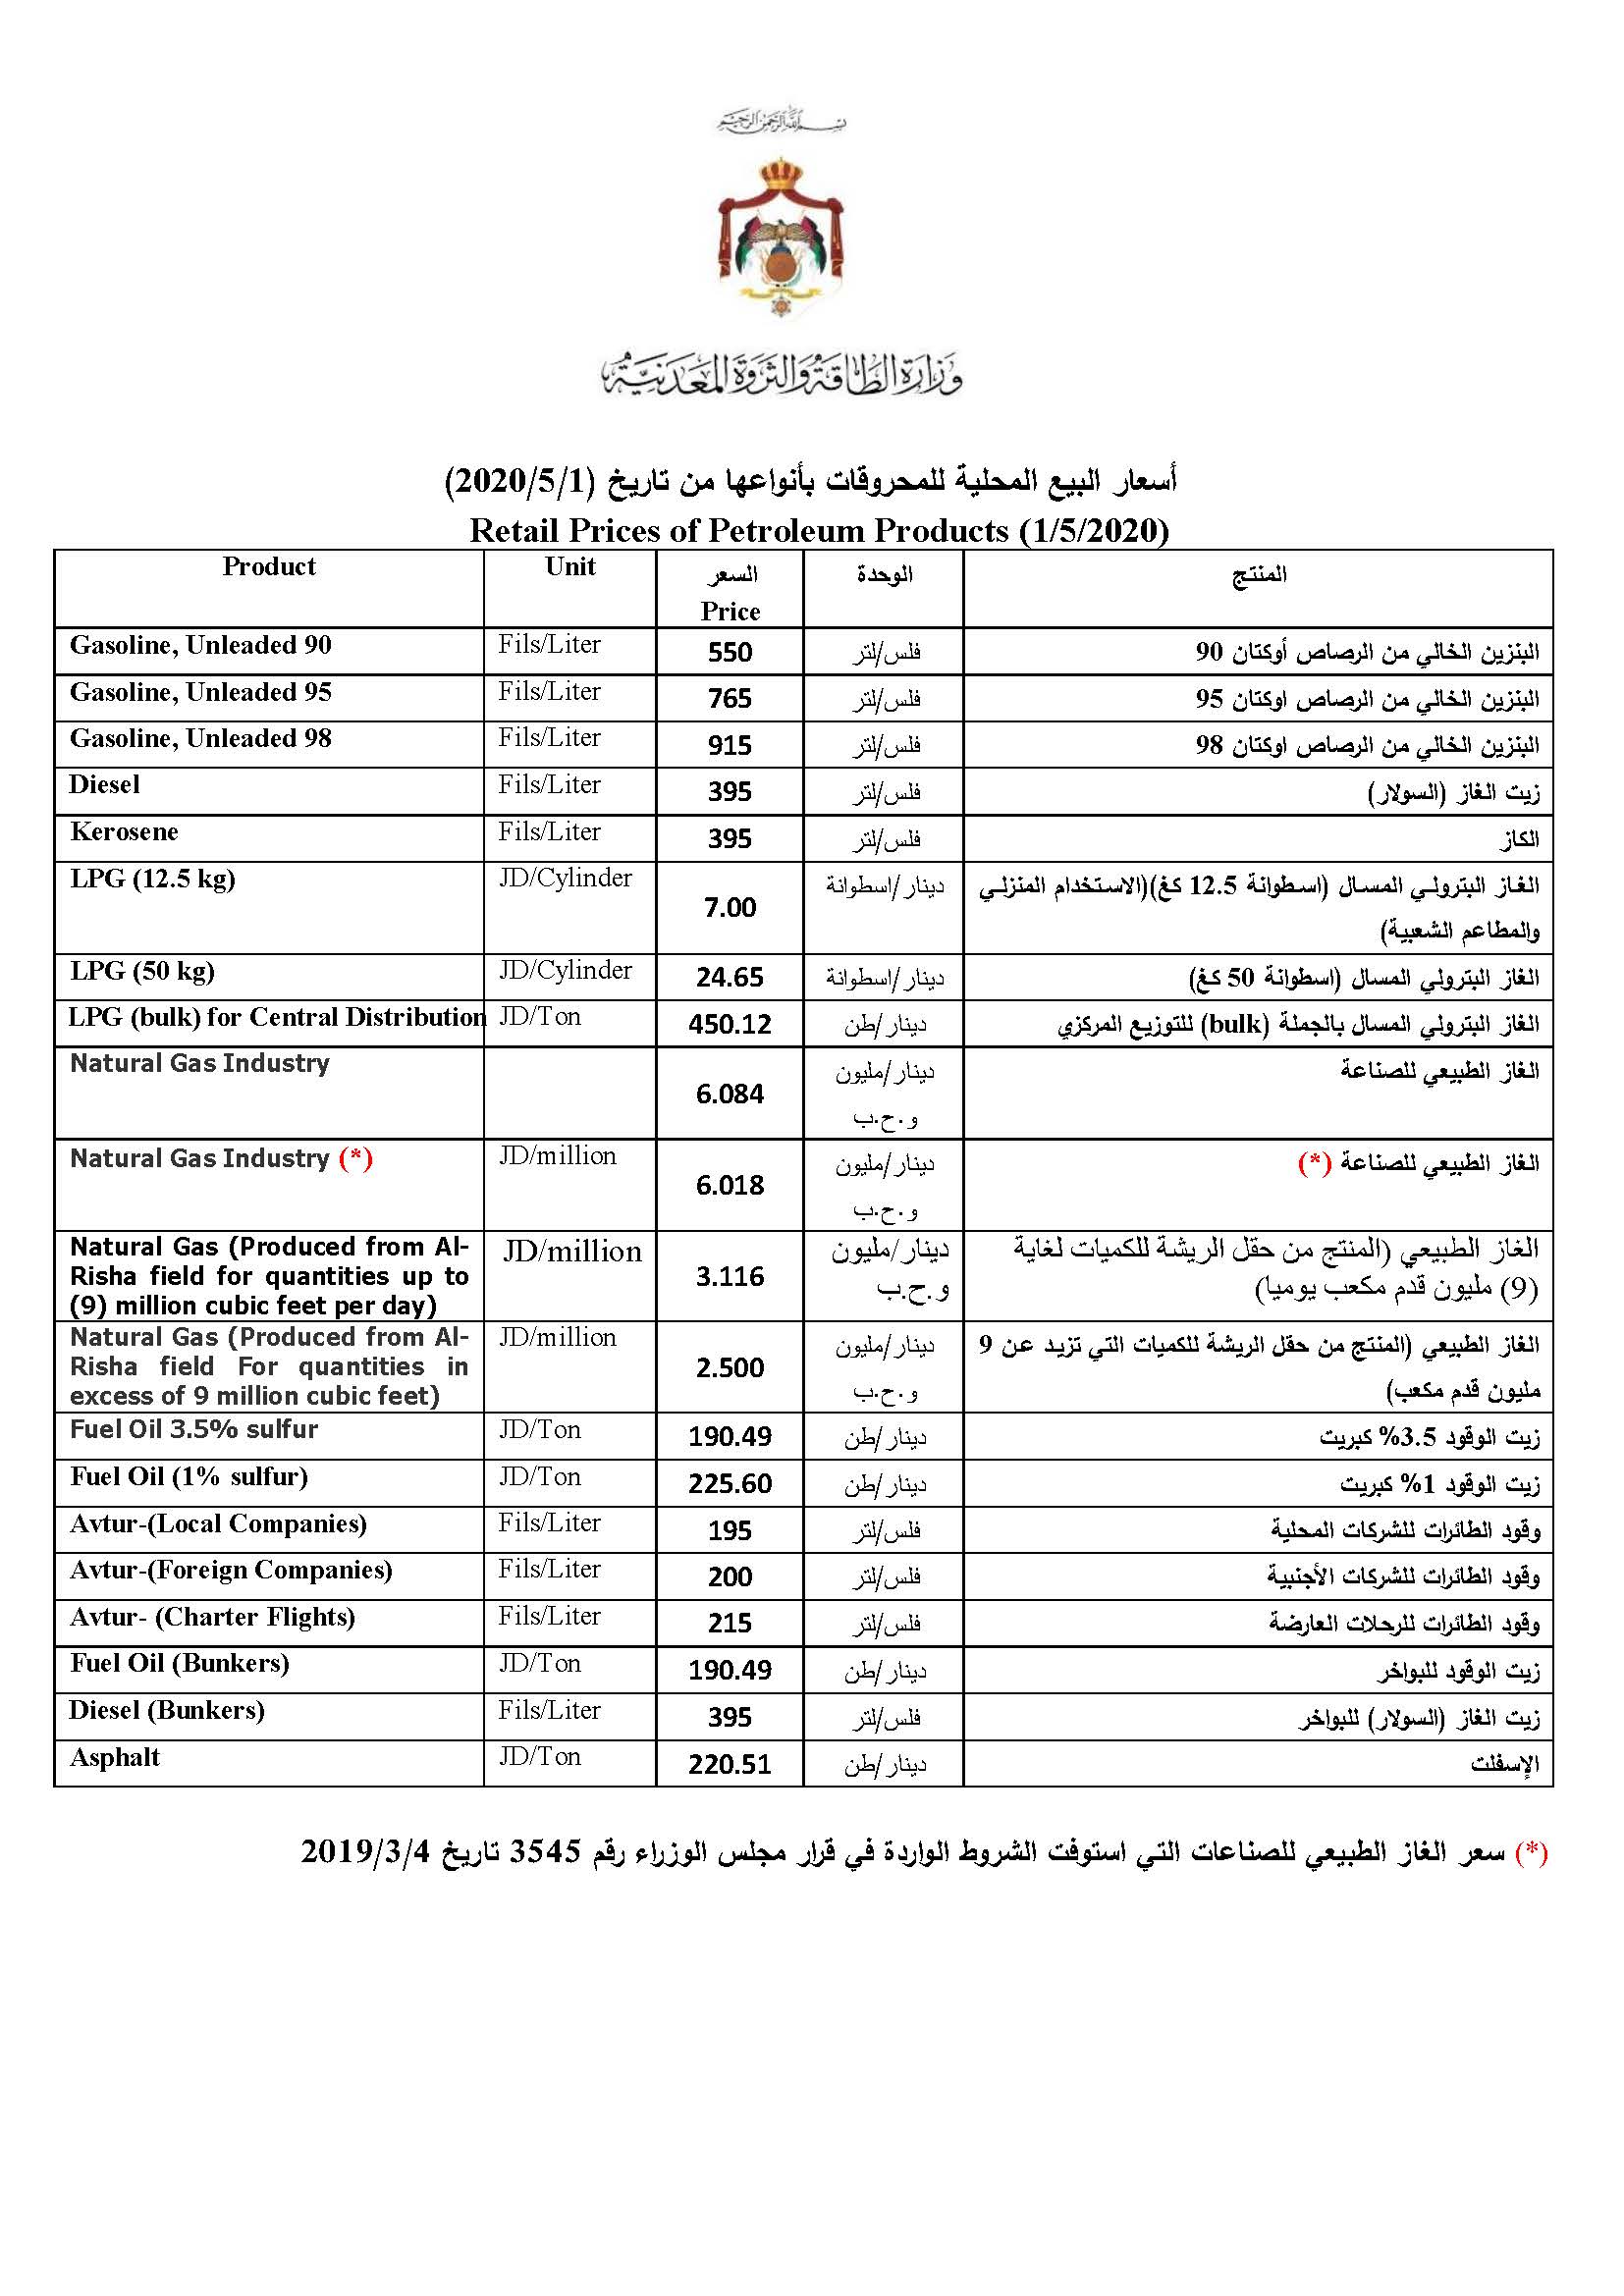 التمكين سحر تنافس  الأردن يخفض أسعار البنزين والسولار لشهر مايو - معلومات مباشر